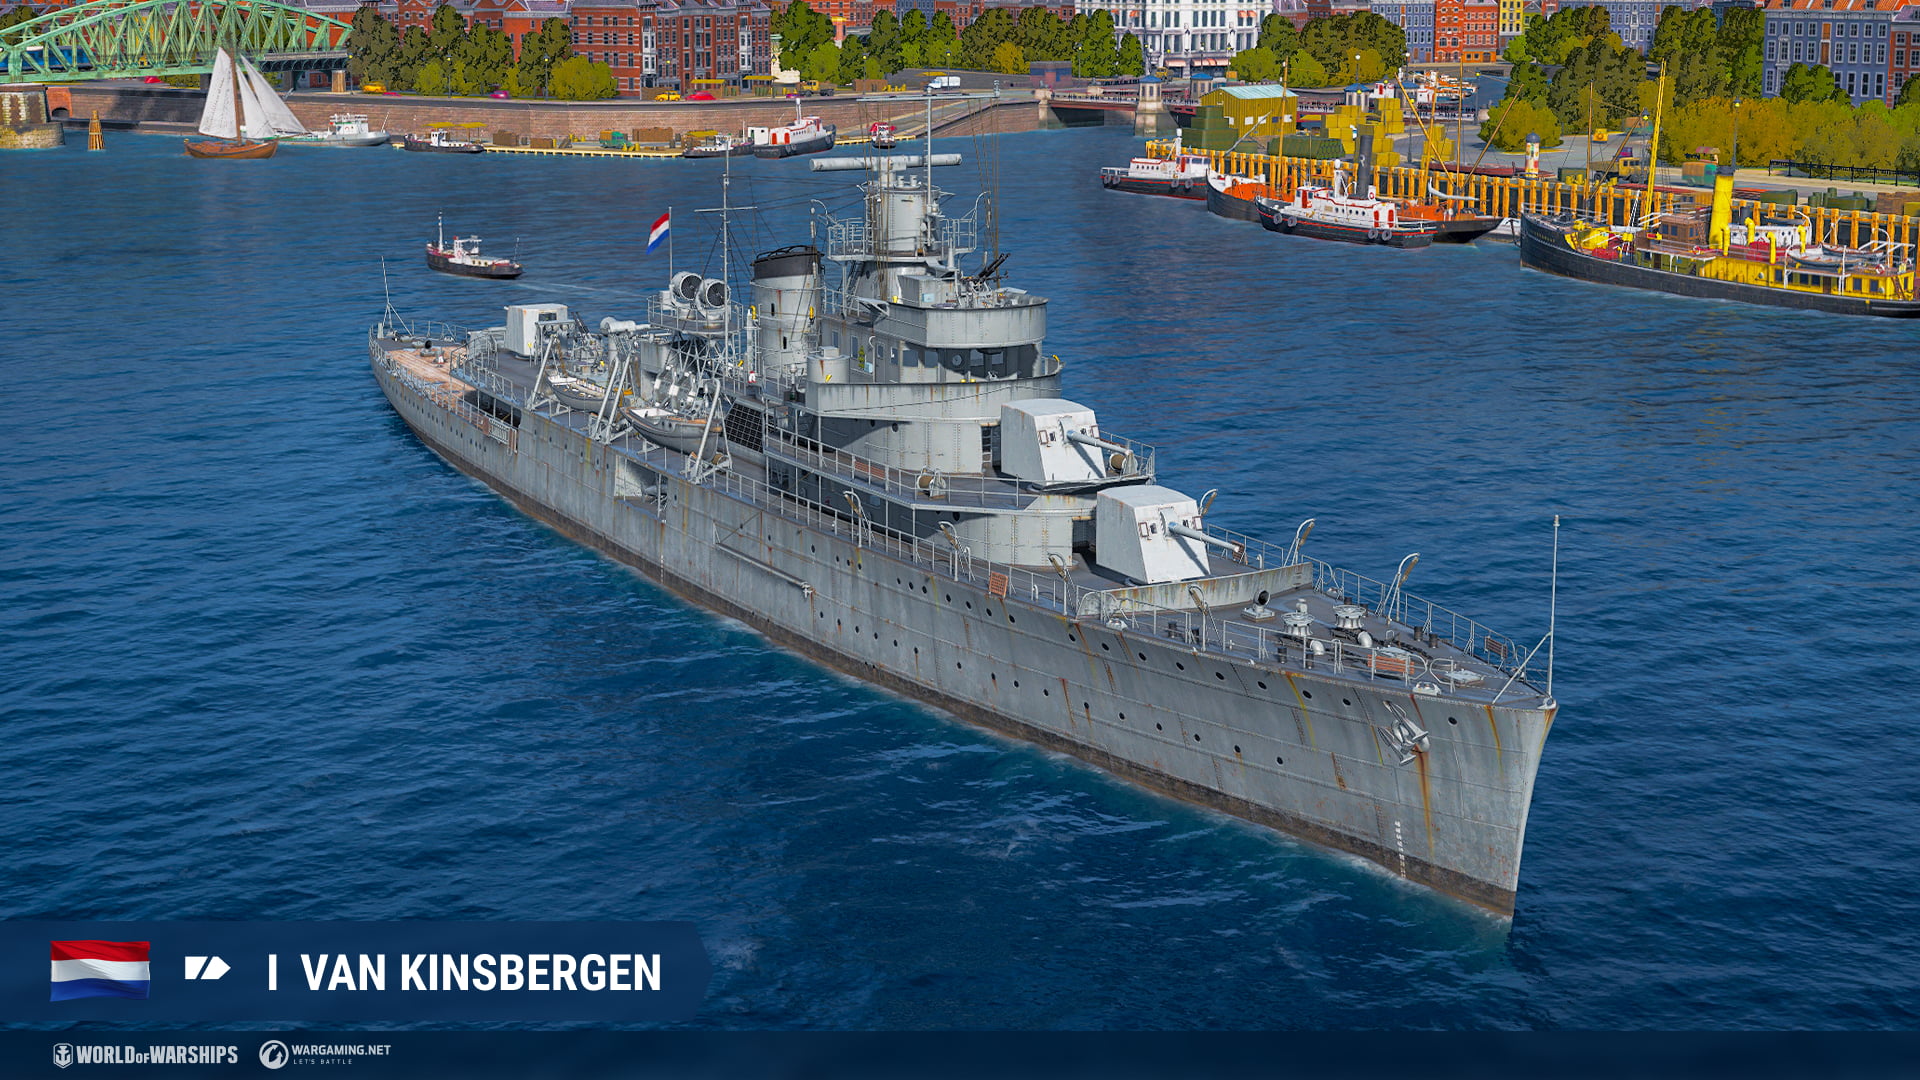 #МИРКОРАБЛЕЙ - Нидерланды - крейсер "Van Kinsbergen"